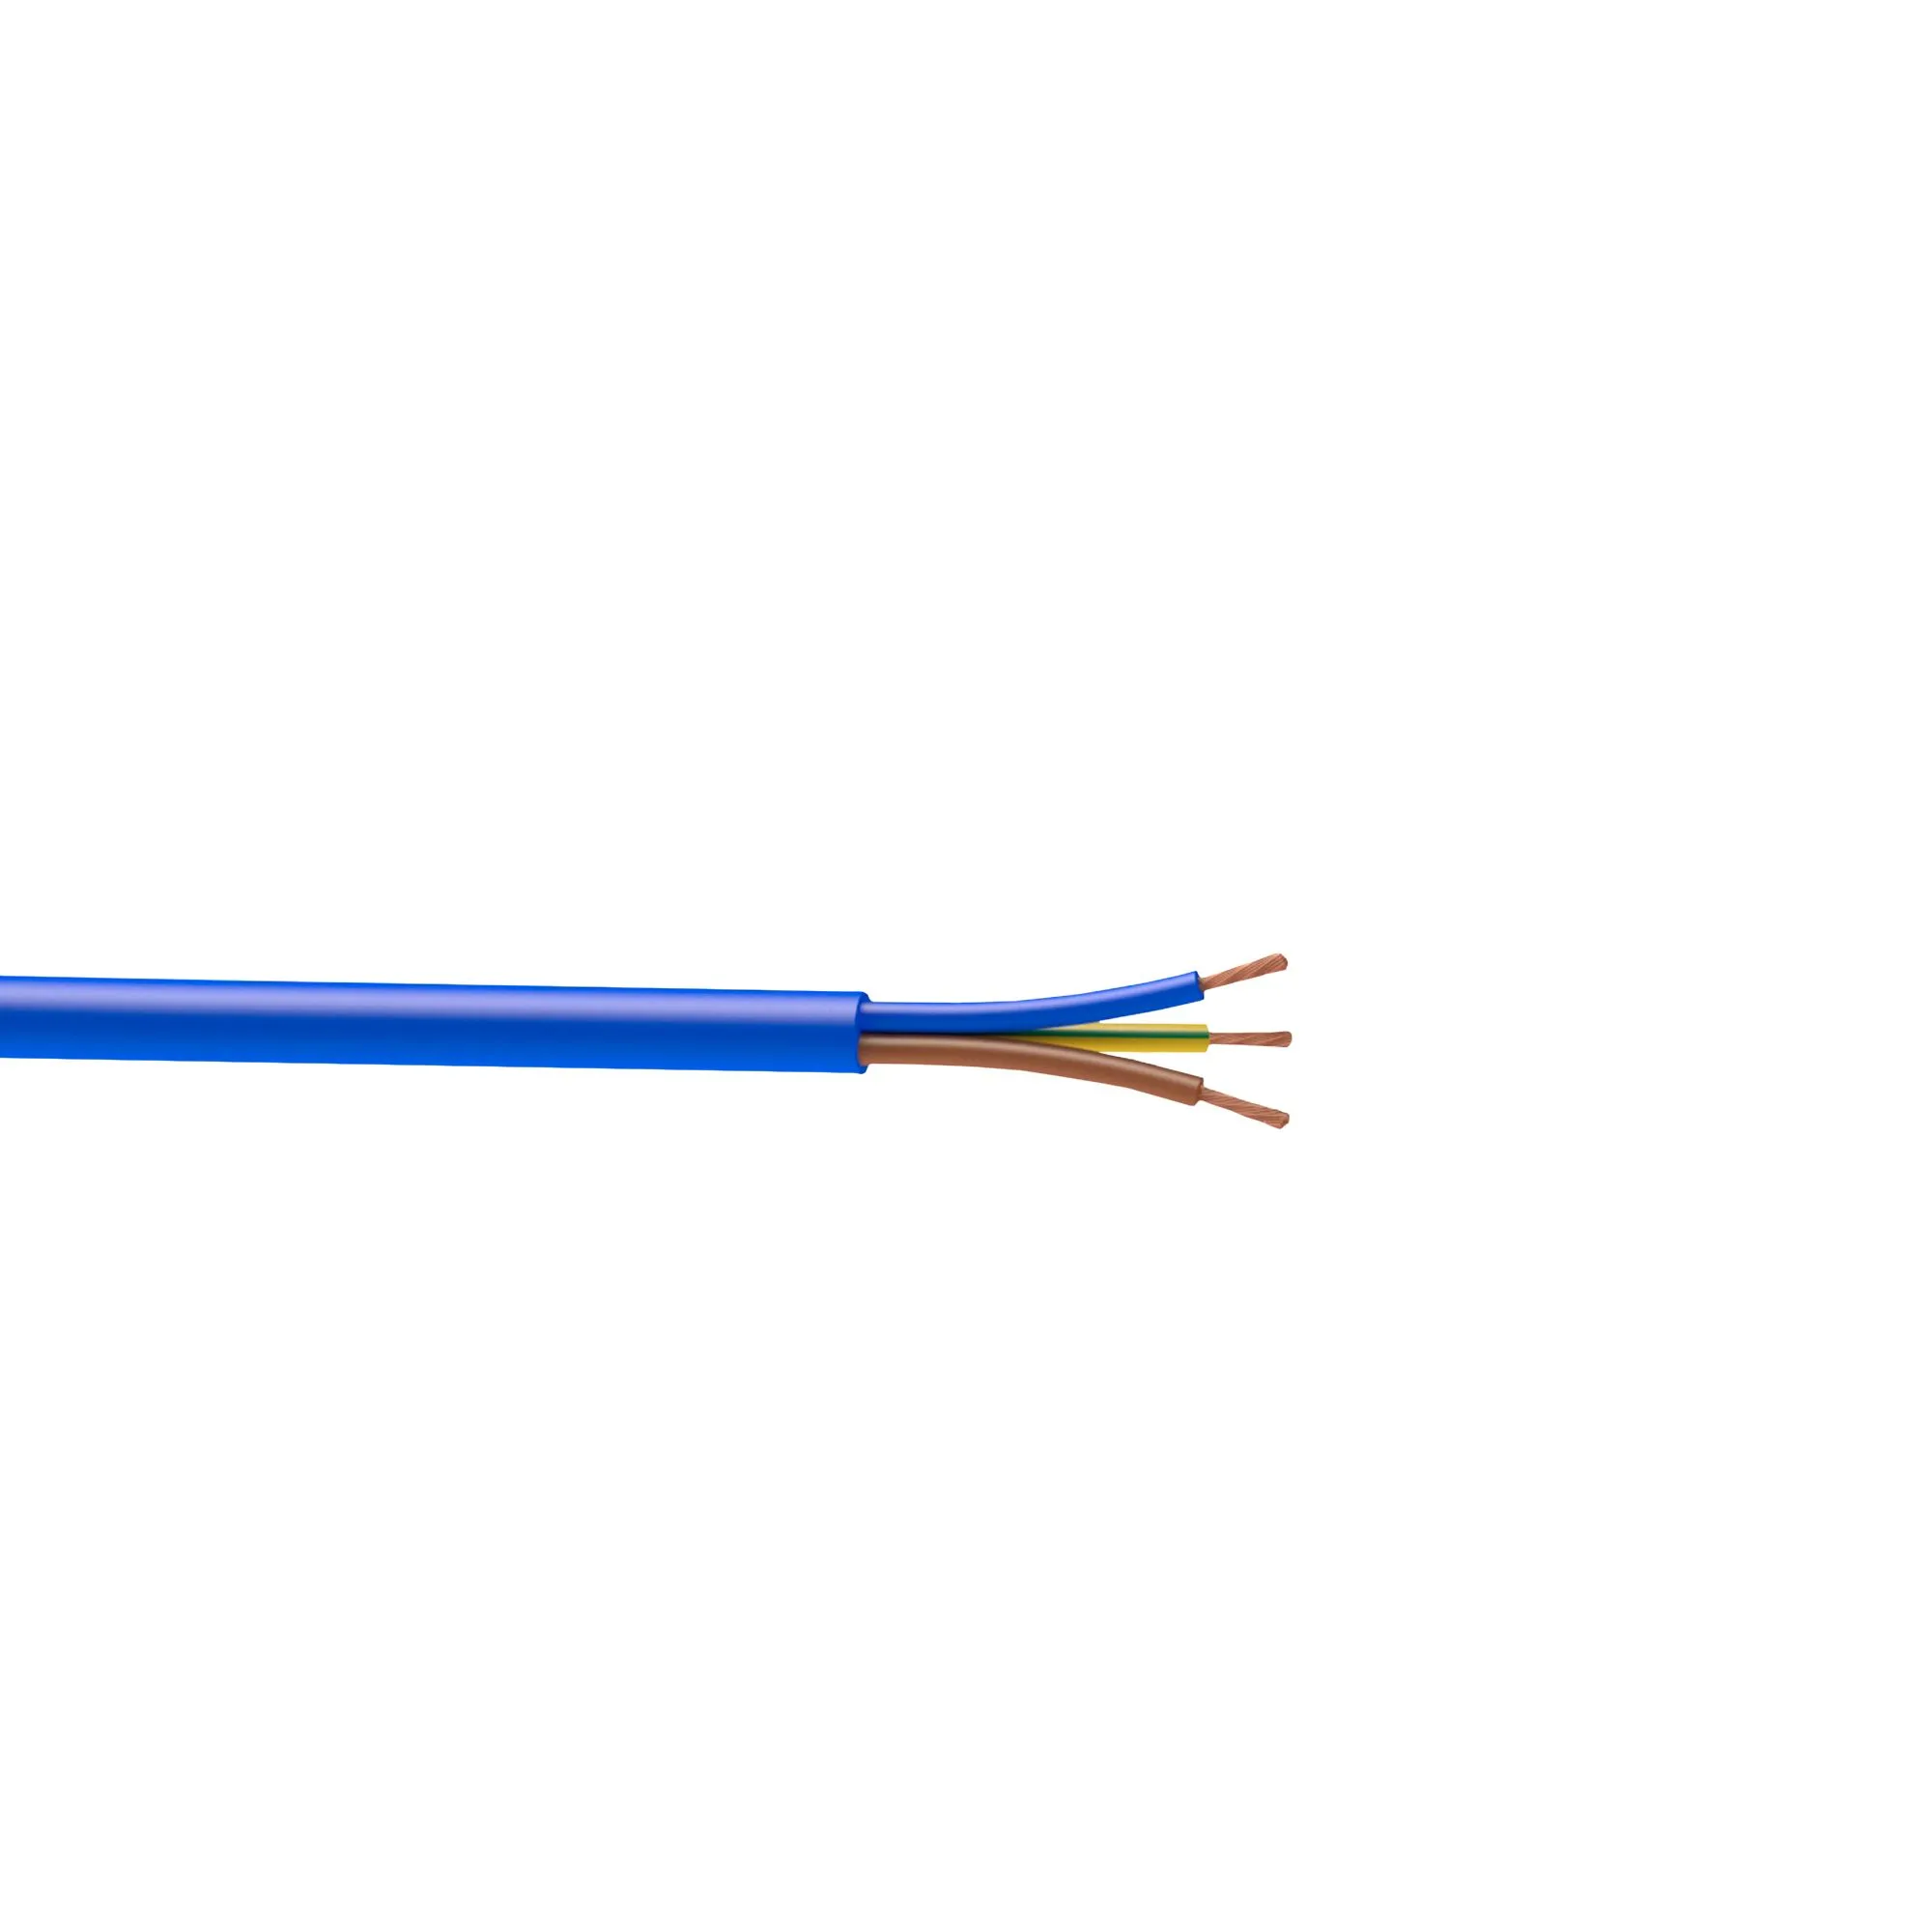 Nexans 3183YAG Blue 3 core Multi-core cable 1.5mm² x 2.5m